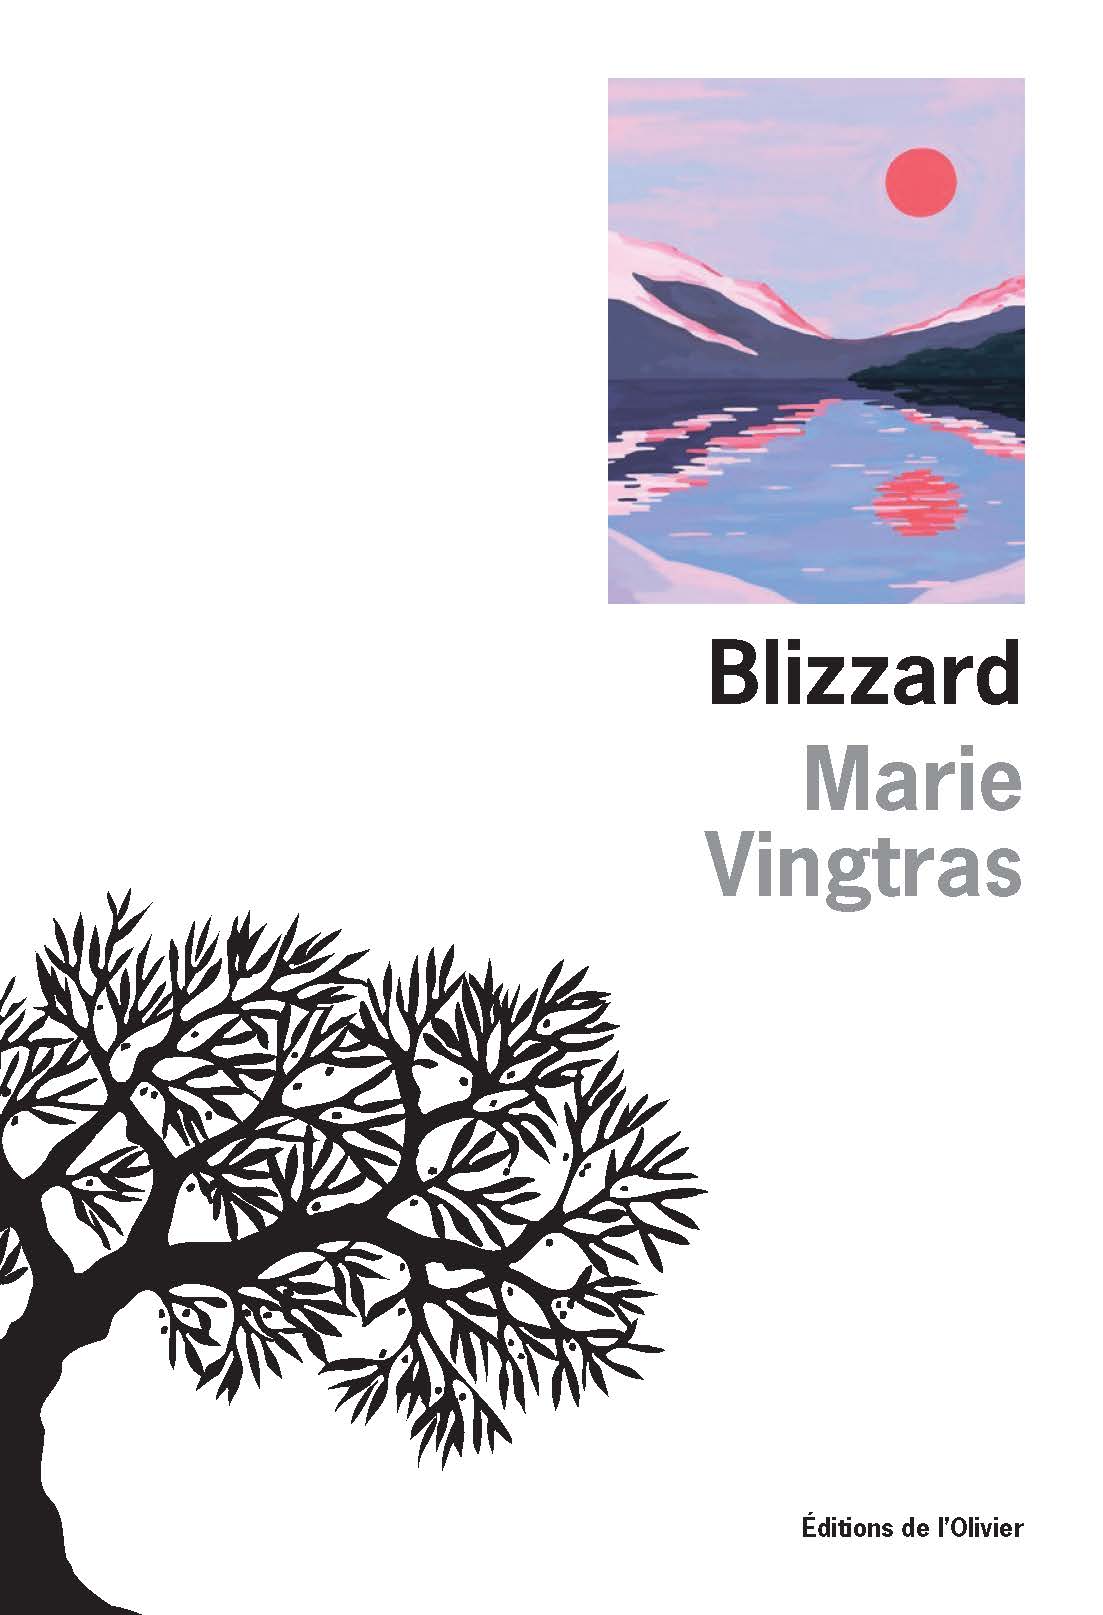 Blizzard de Marie Vingtras